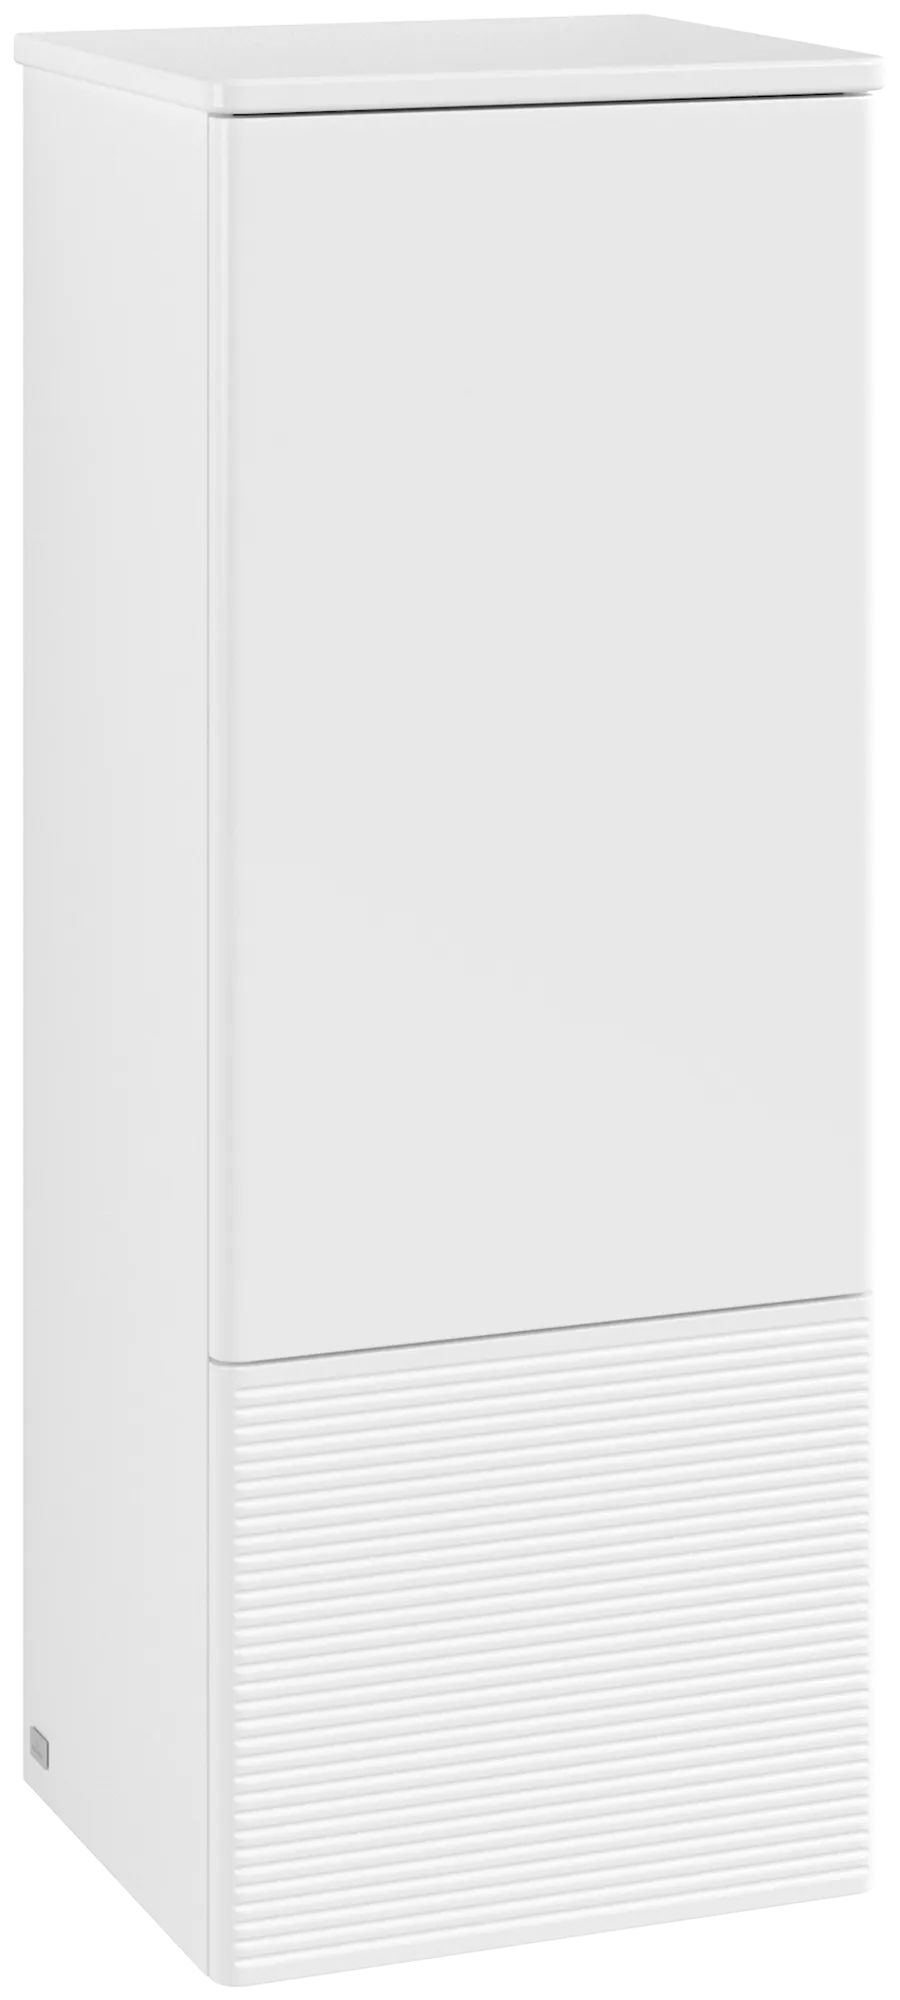 Bild von VILLEROY BOCH Antao Mittelschrank, 1 Tür, 414 x 1039 x 356 mm, Front mit Struktur, White Matt Lacquer / White Matt Lacquer #K44100MT